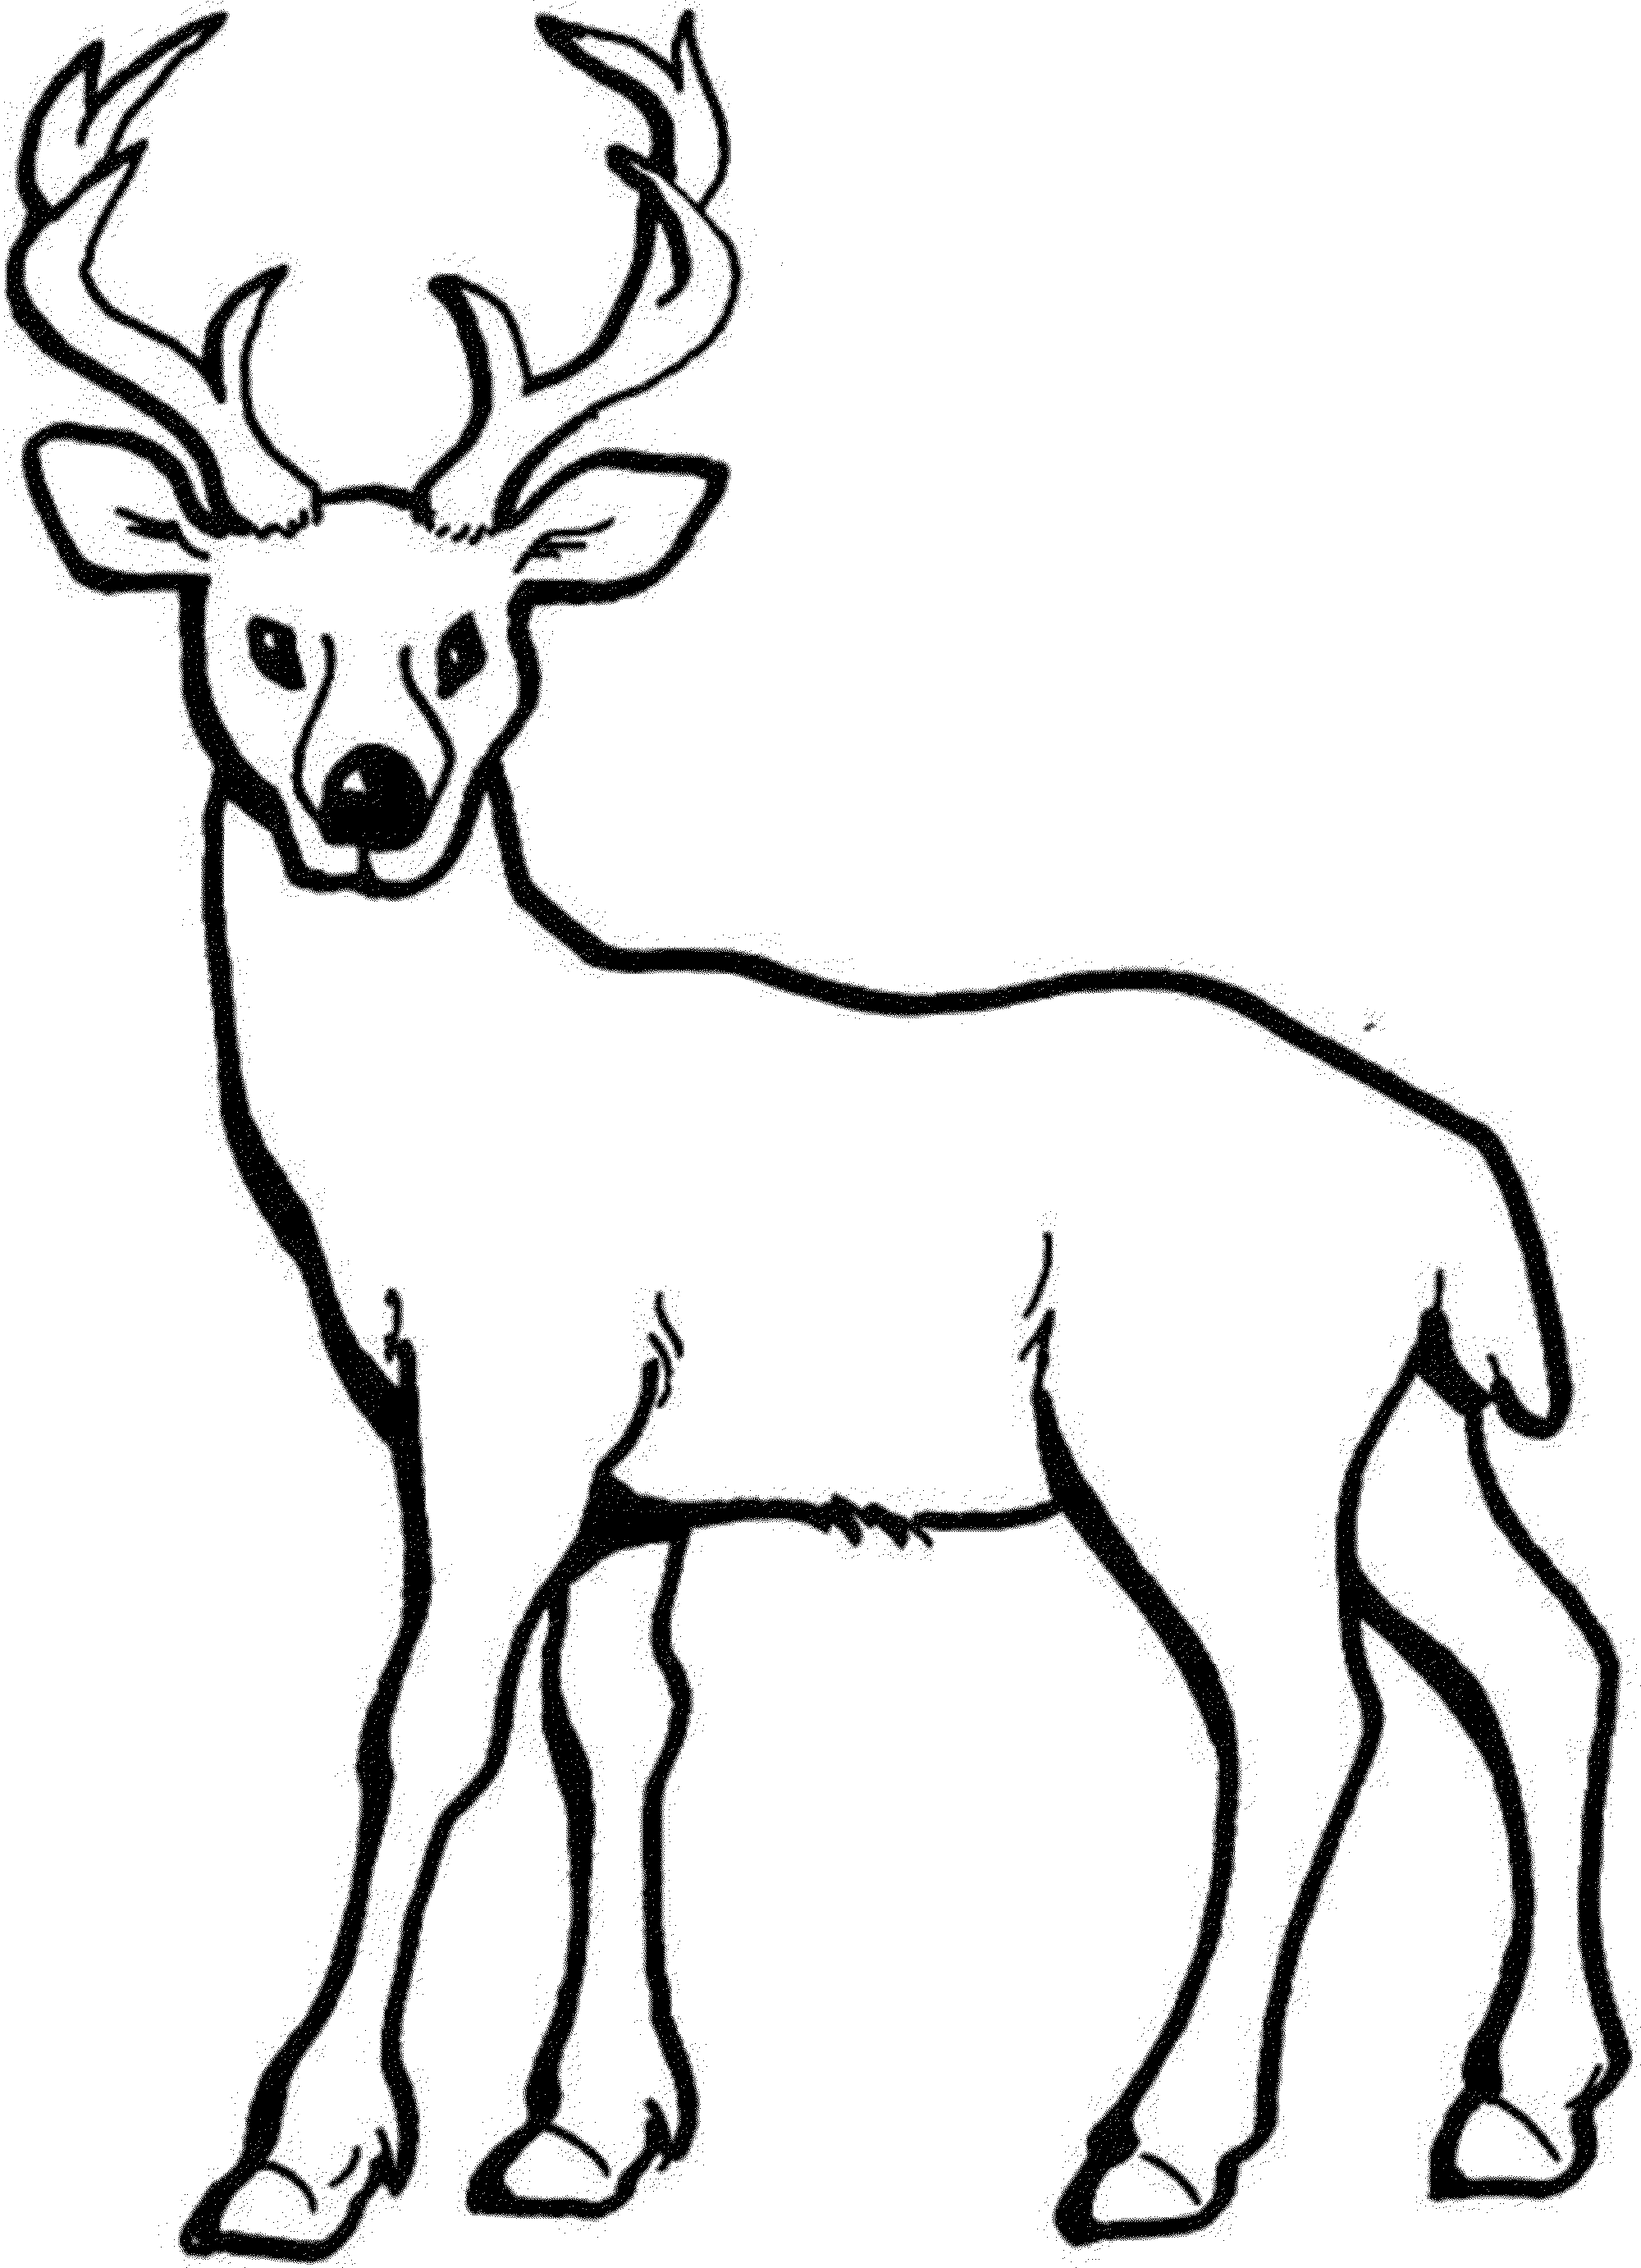 Mule Deer Drawing at GetDrawings | Free download